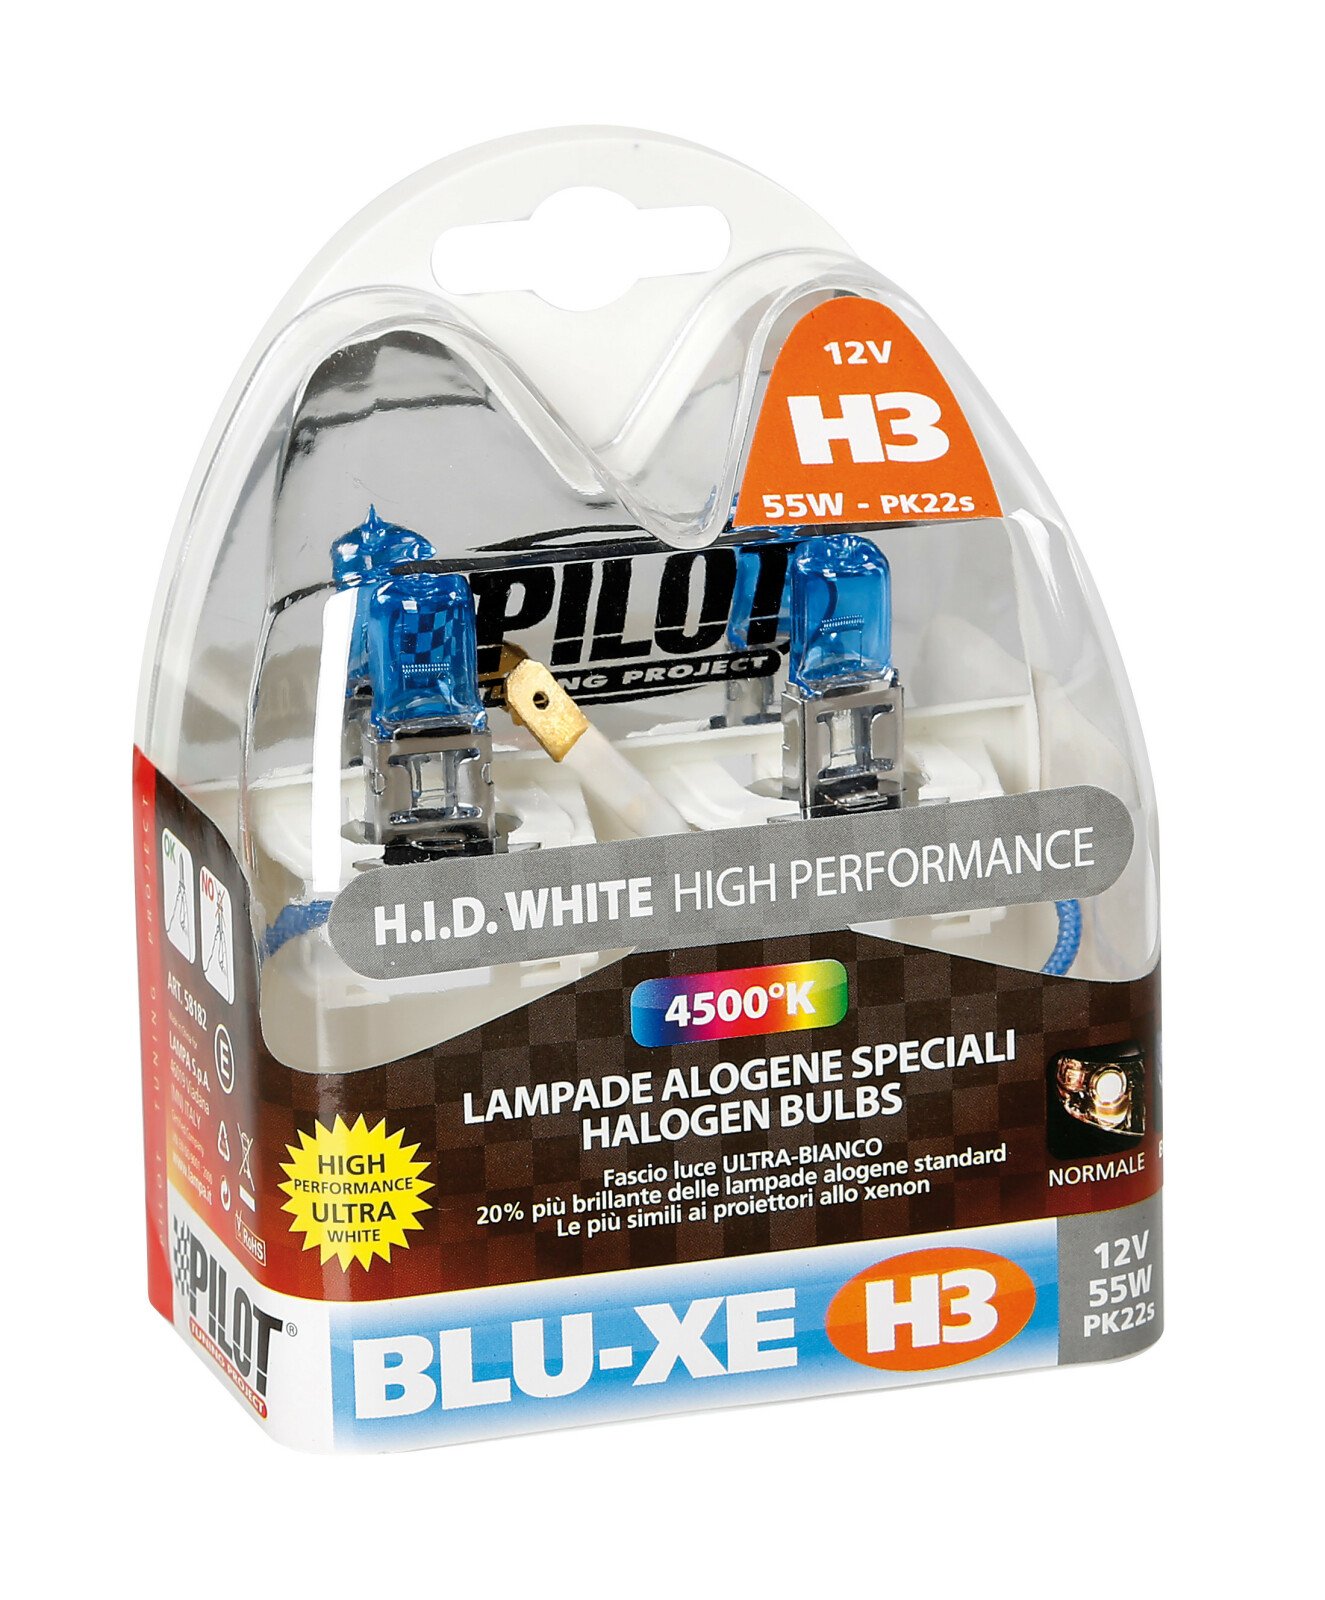 12V Blu-Xe halogen lamp - H3 - 55W - PK22s - 2 pcs thumb